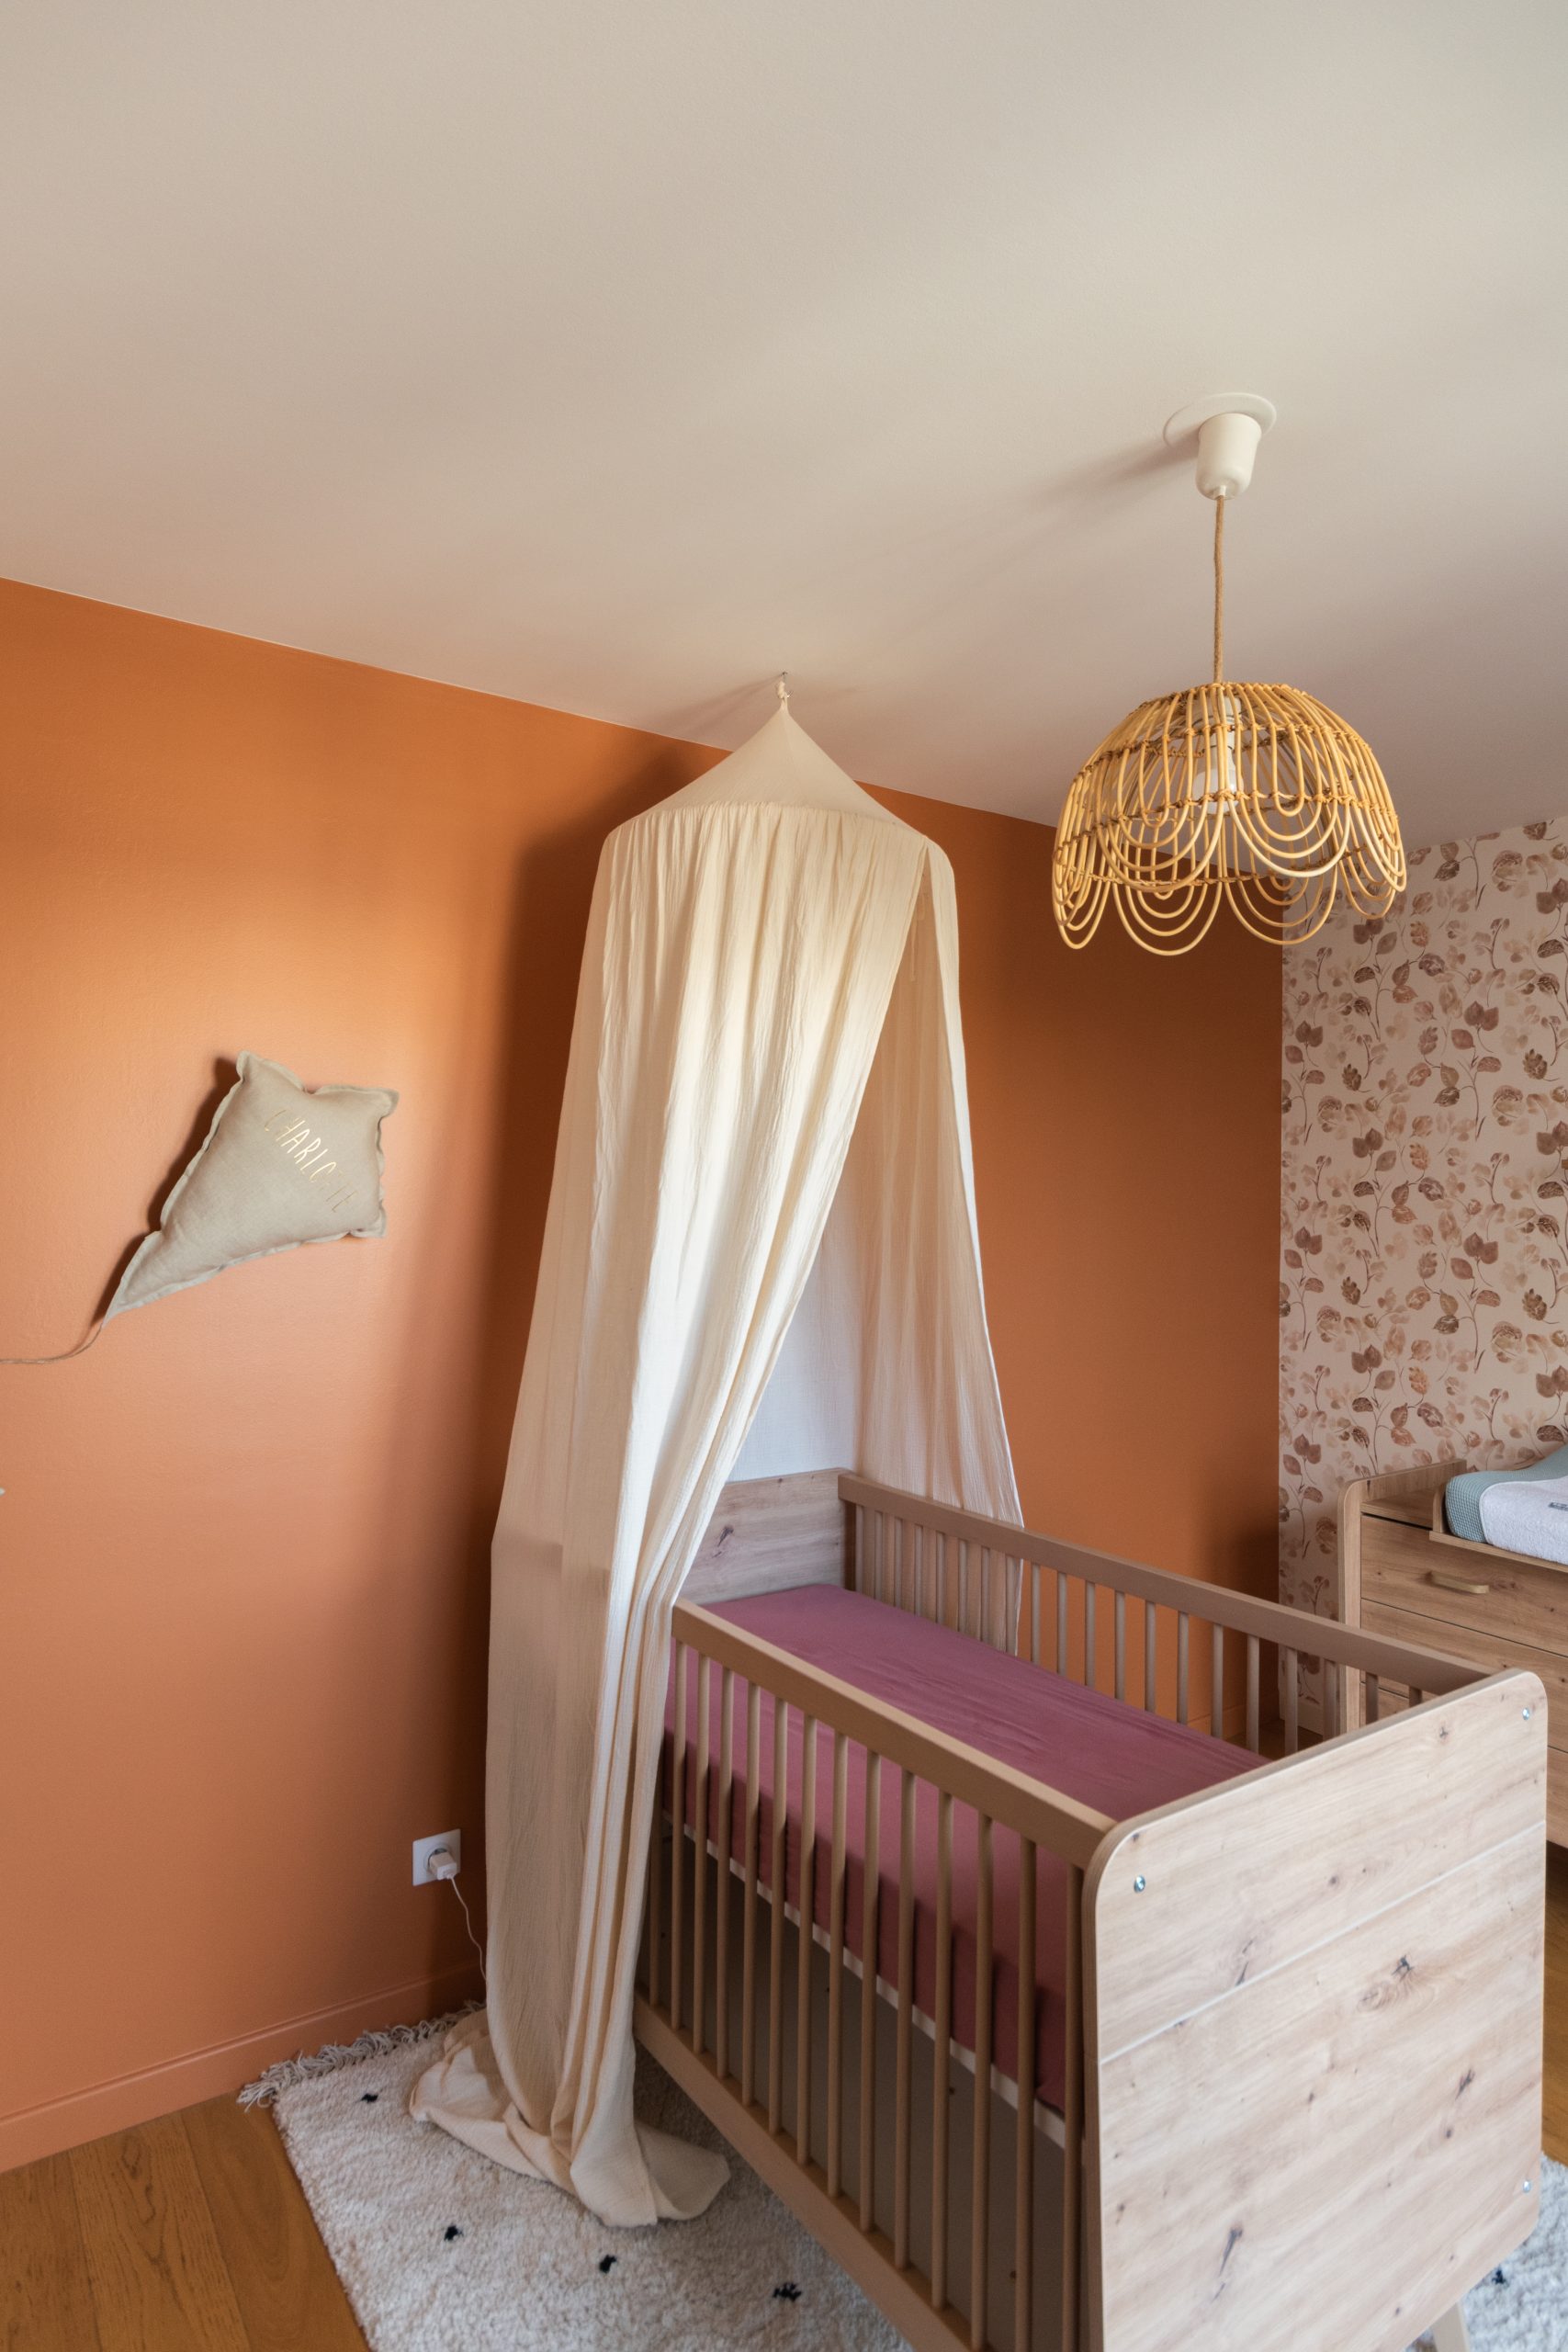 Photo du projet Reine qui montre le lit évolutif de cette chambre d’enfant mixte, le ciel de lit beige et la suspension en forme de fleur, en rotin. Le tout sur un fond de mur Terracotta.